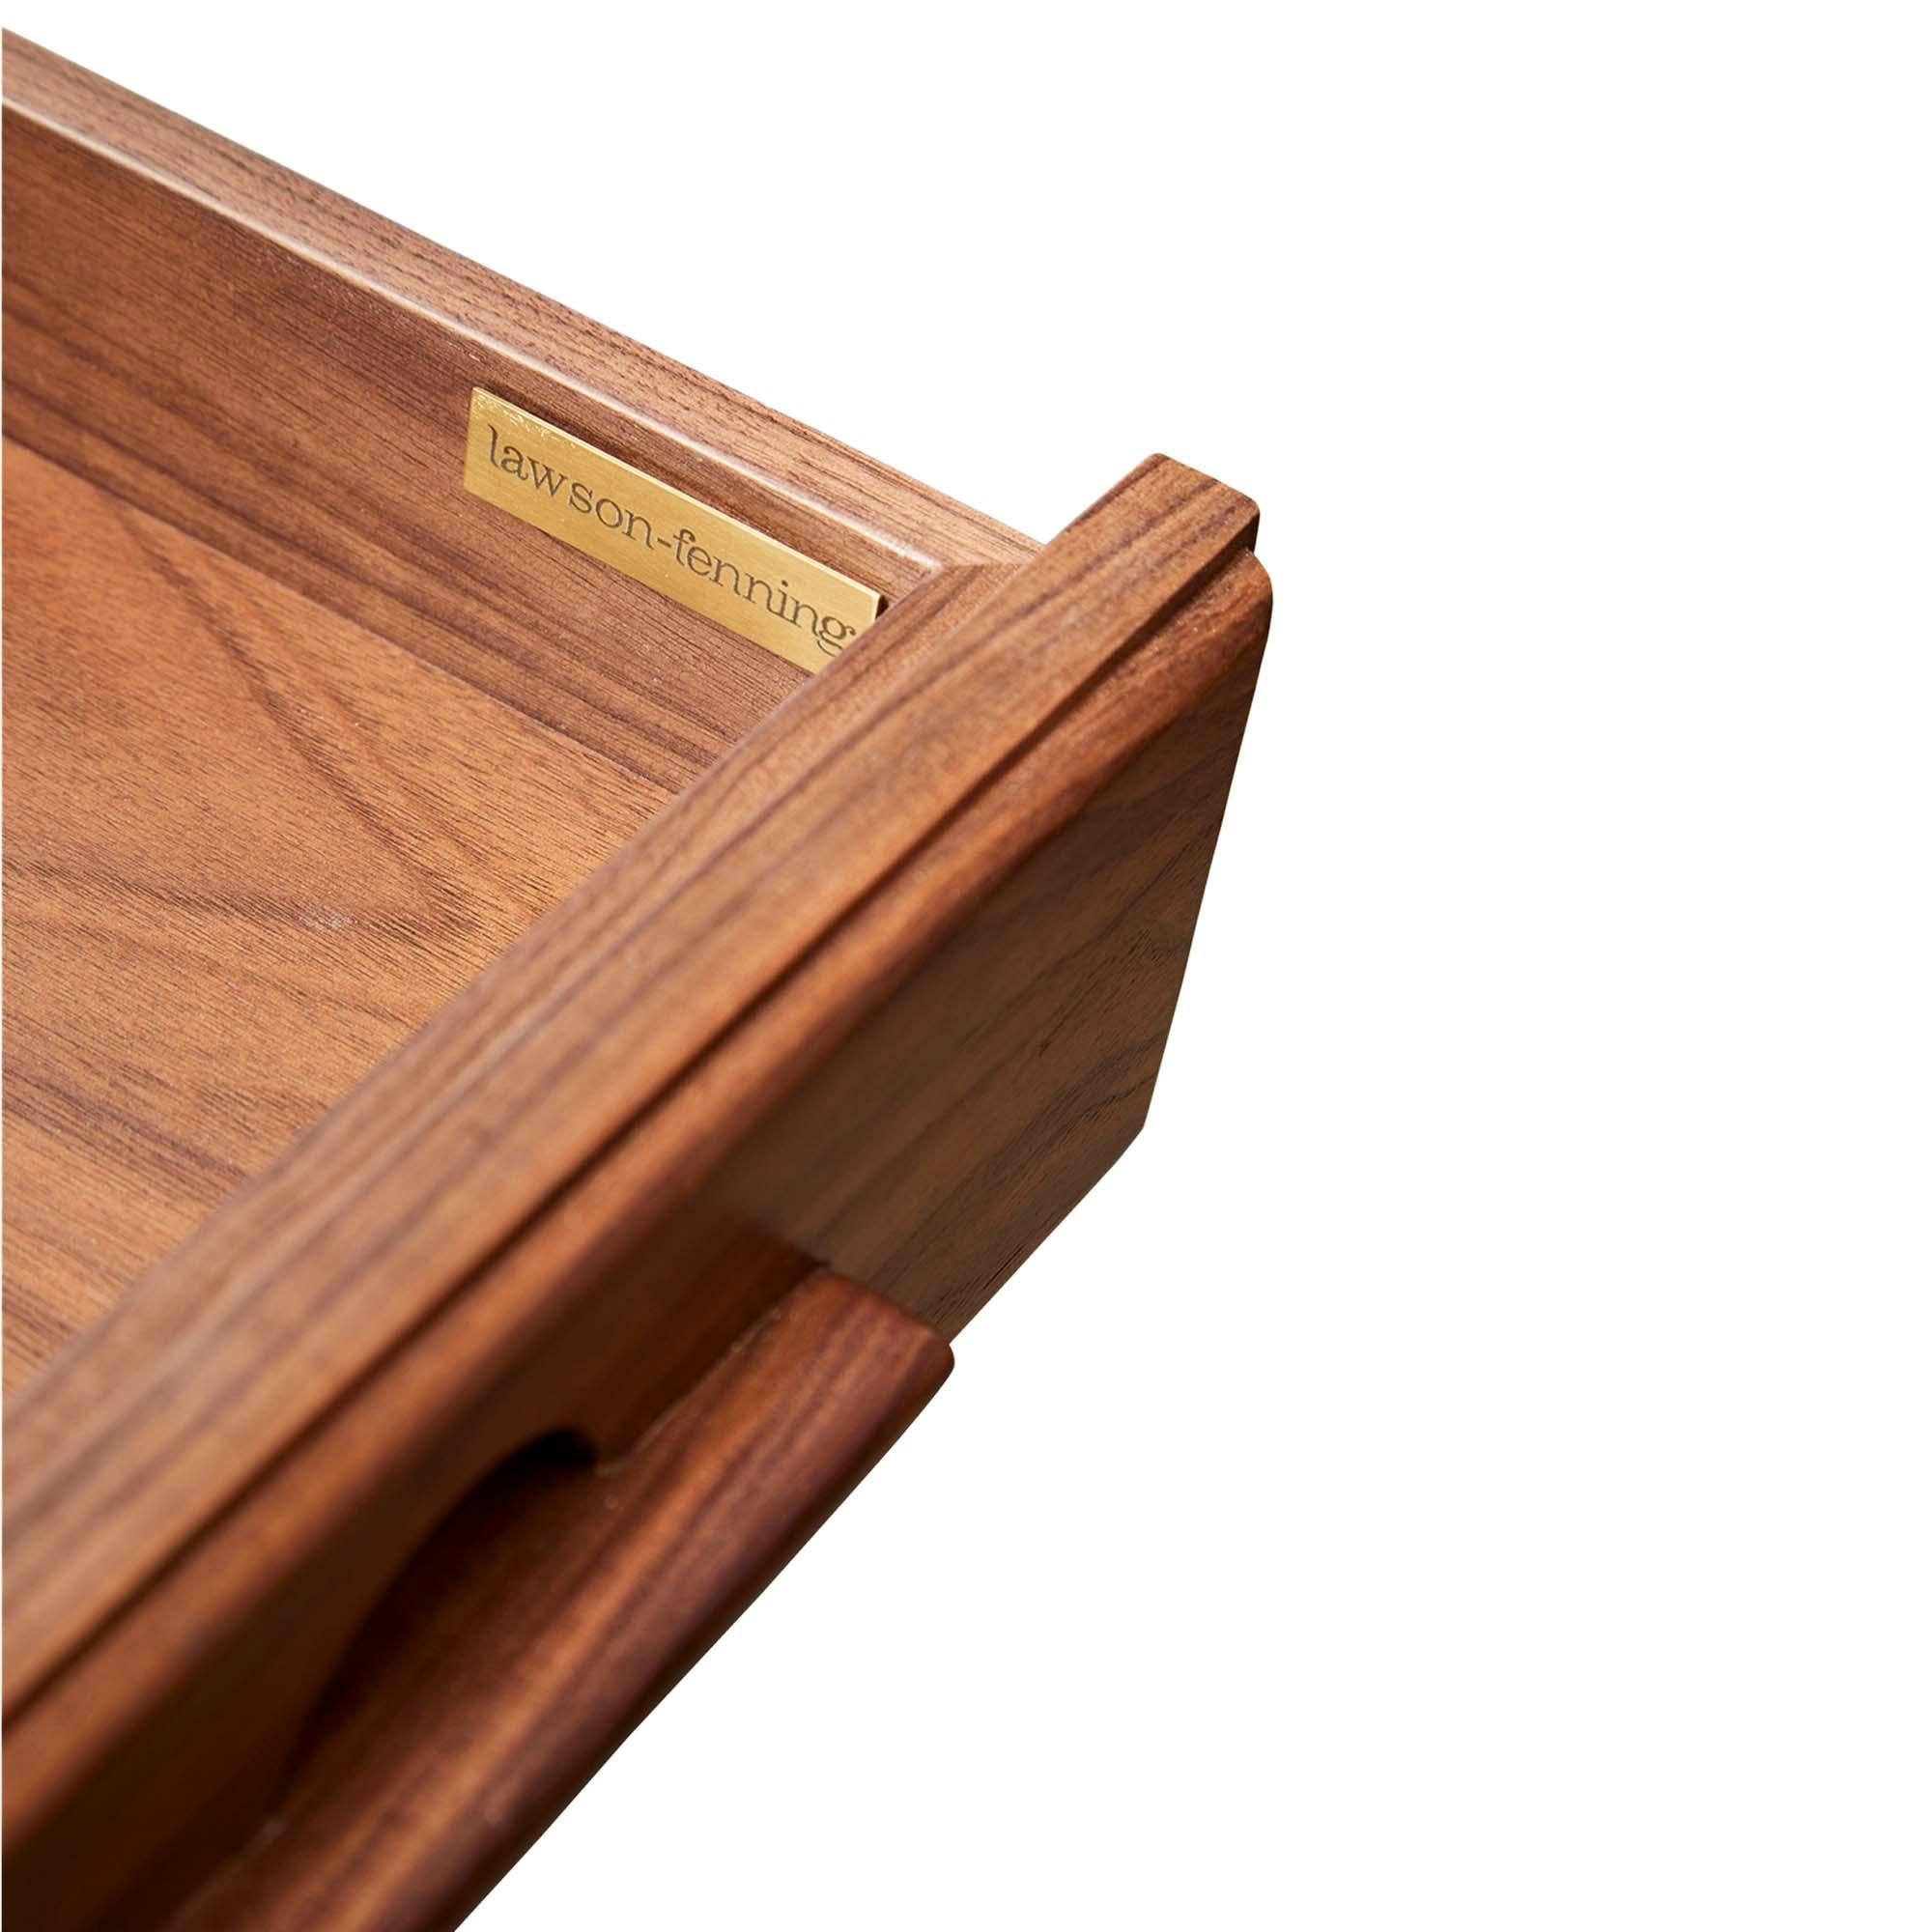 Contemporary Walnut Ojai Desk by Lawson-Fenning For Sale